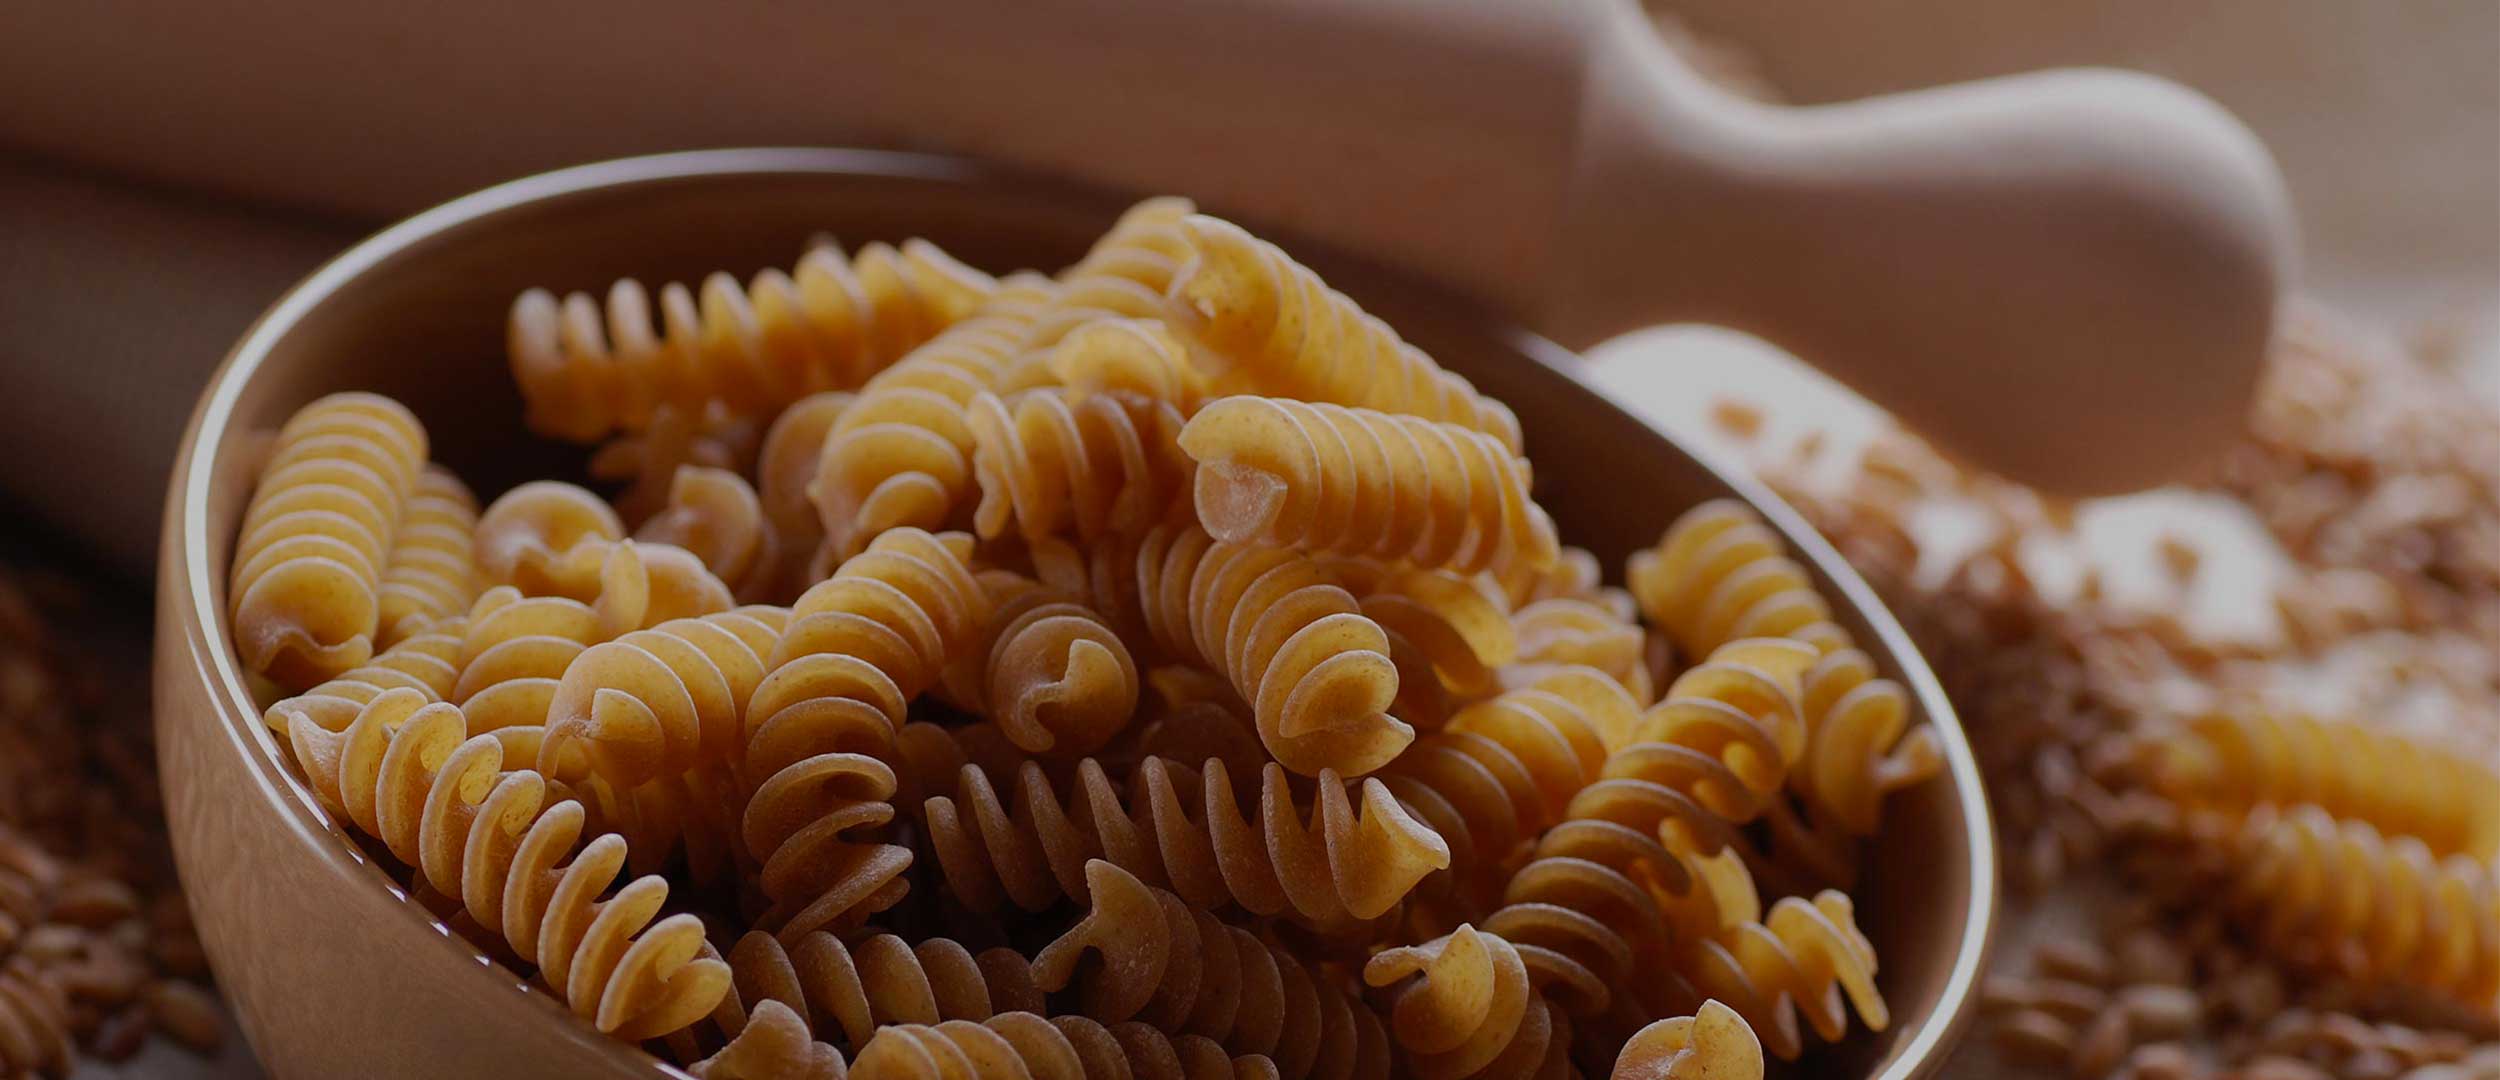 Warda whole grain pasta